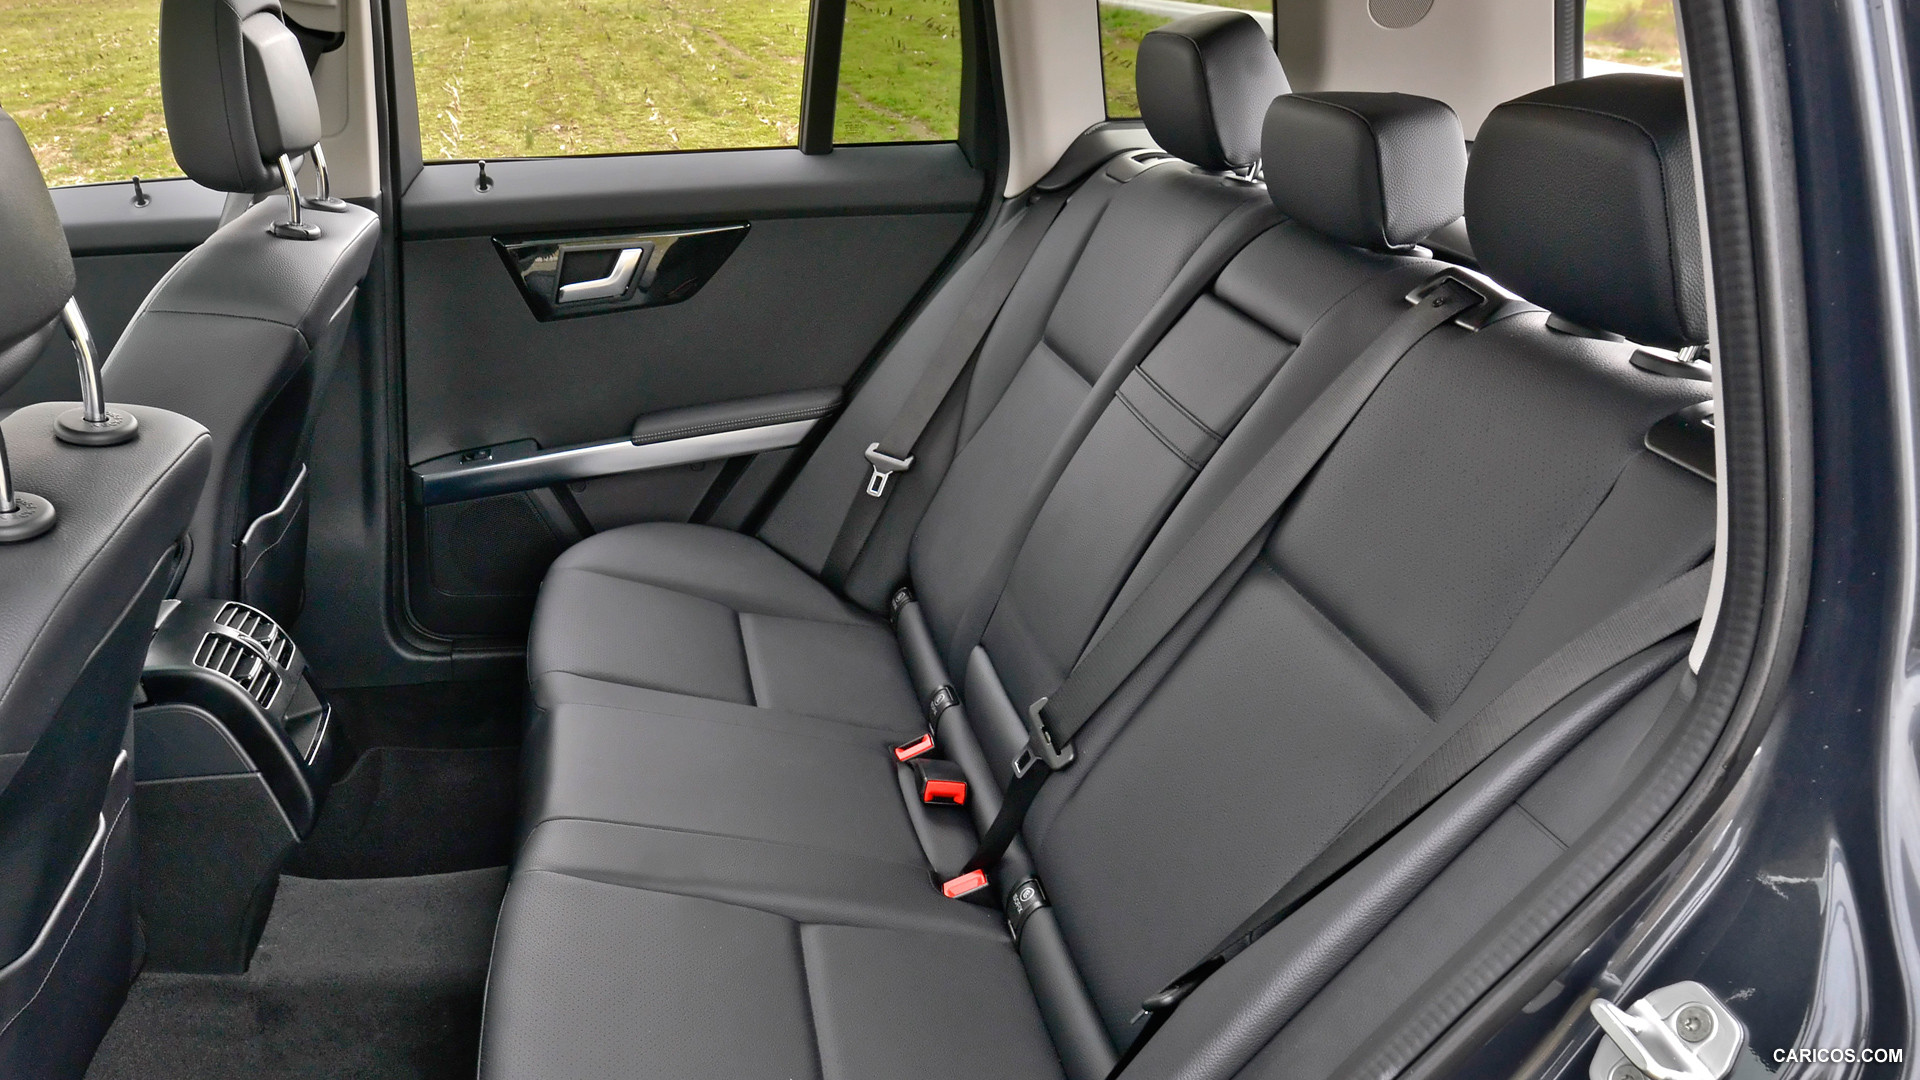 2013 Mercedes-Benz GLK250 BlueTEC  - Interior Rear Seats, #86 of 109